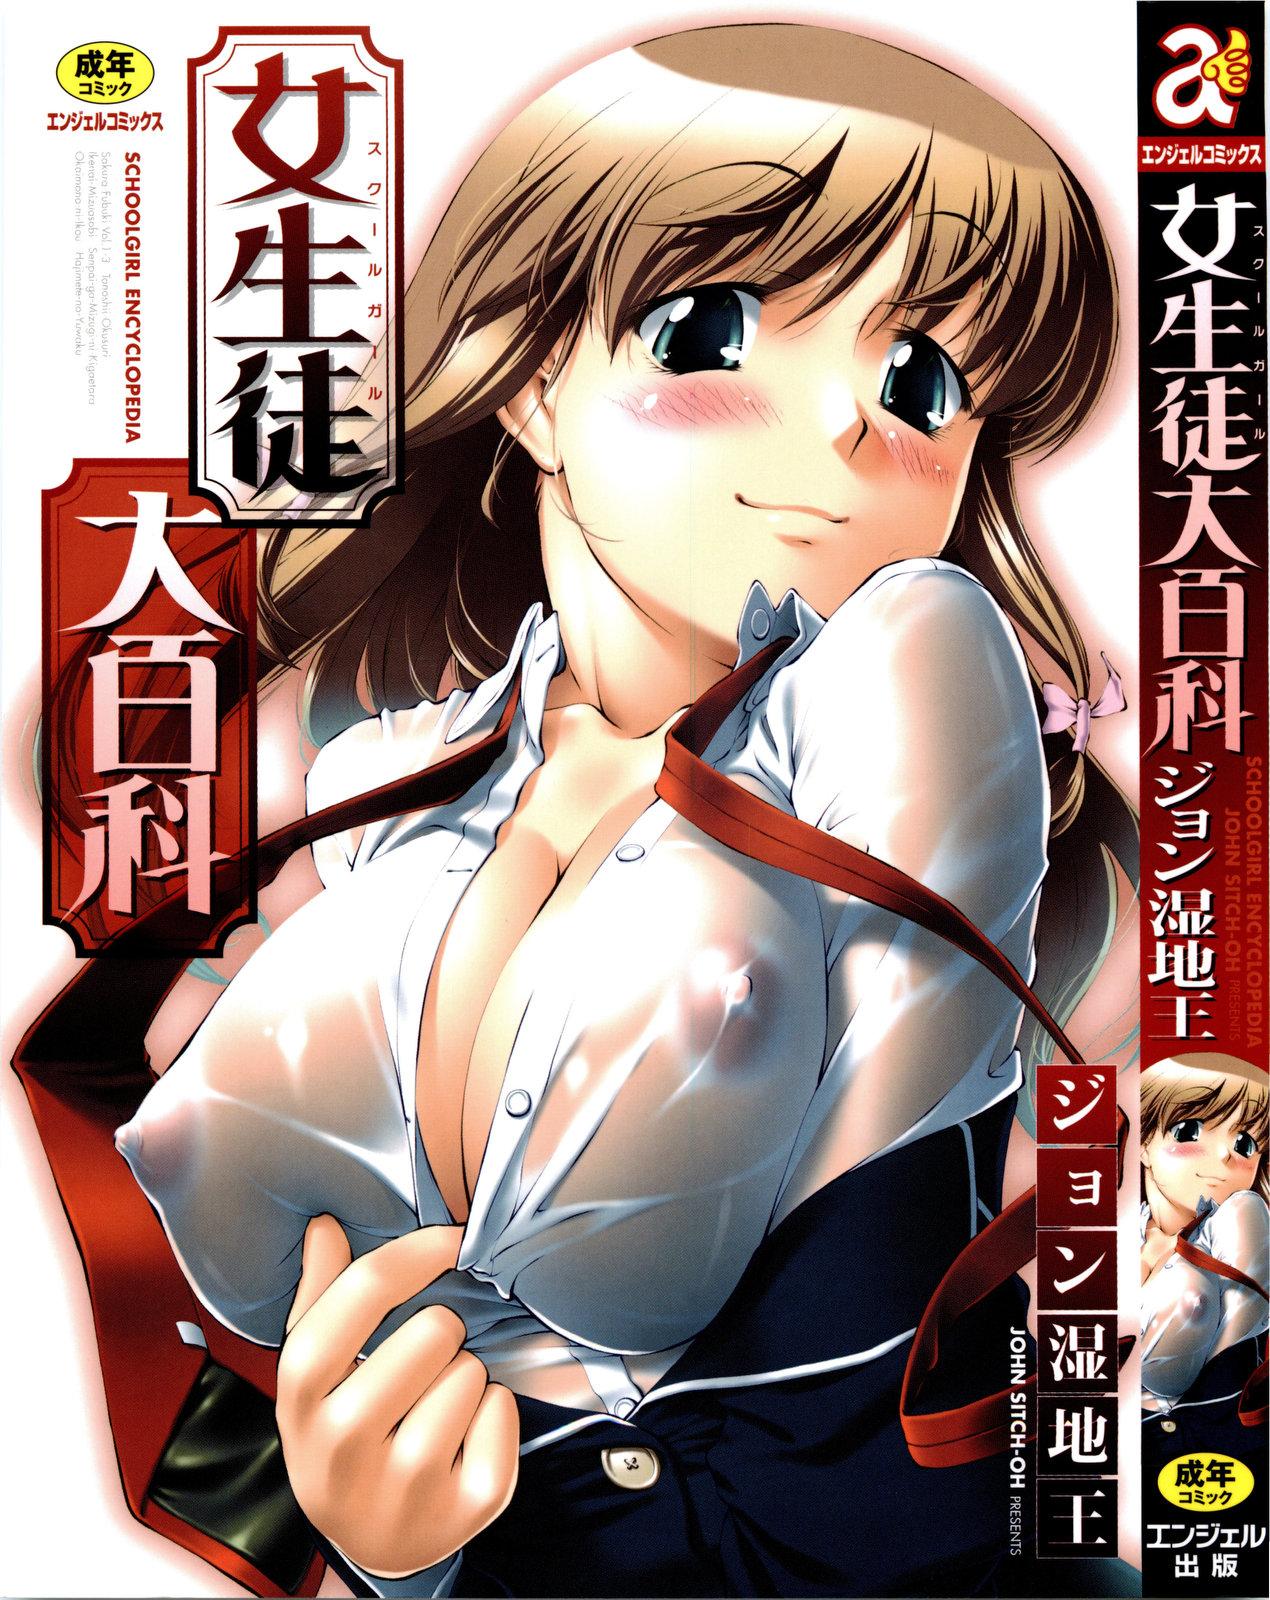 Joseito Daihyakka - Schoolgirl Encyclopedia 0